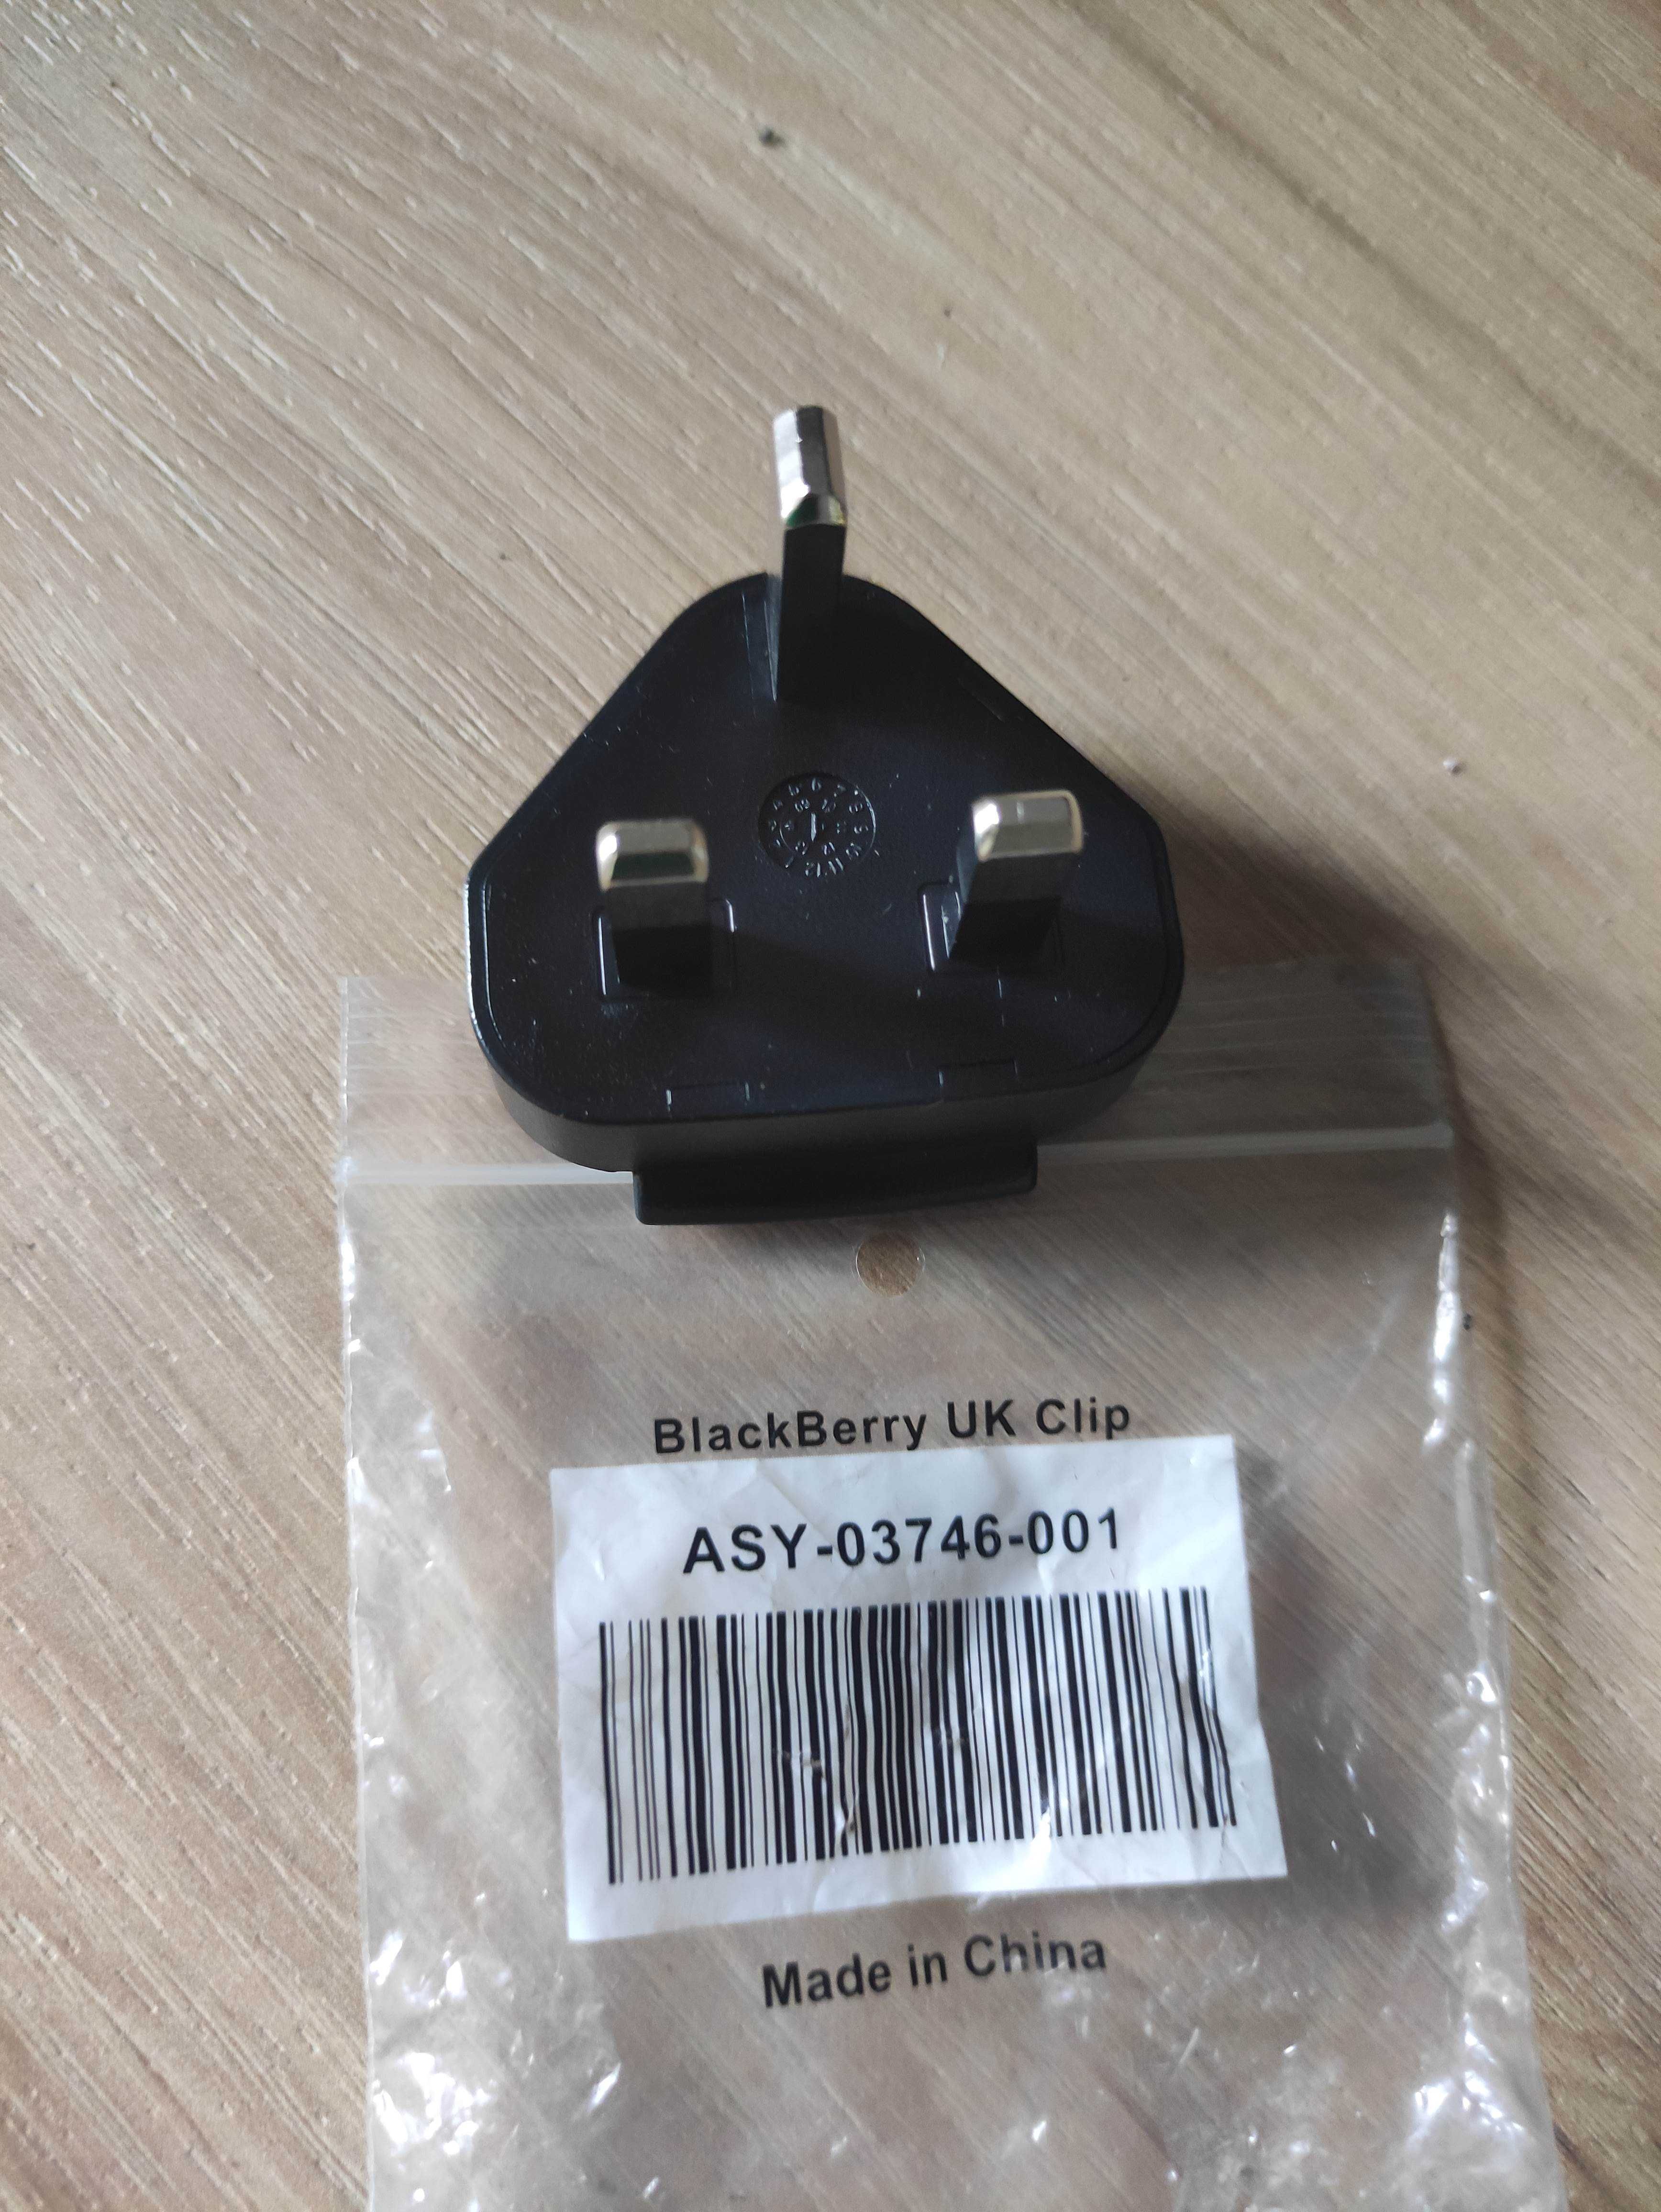 adapter Blackberry (UK clip) ASY model 0 3 7 4 6 - nowy